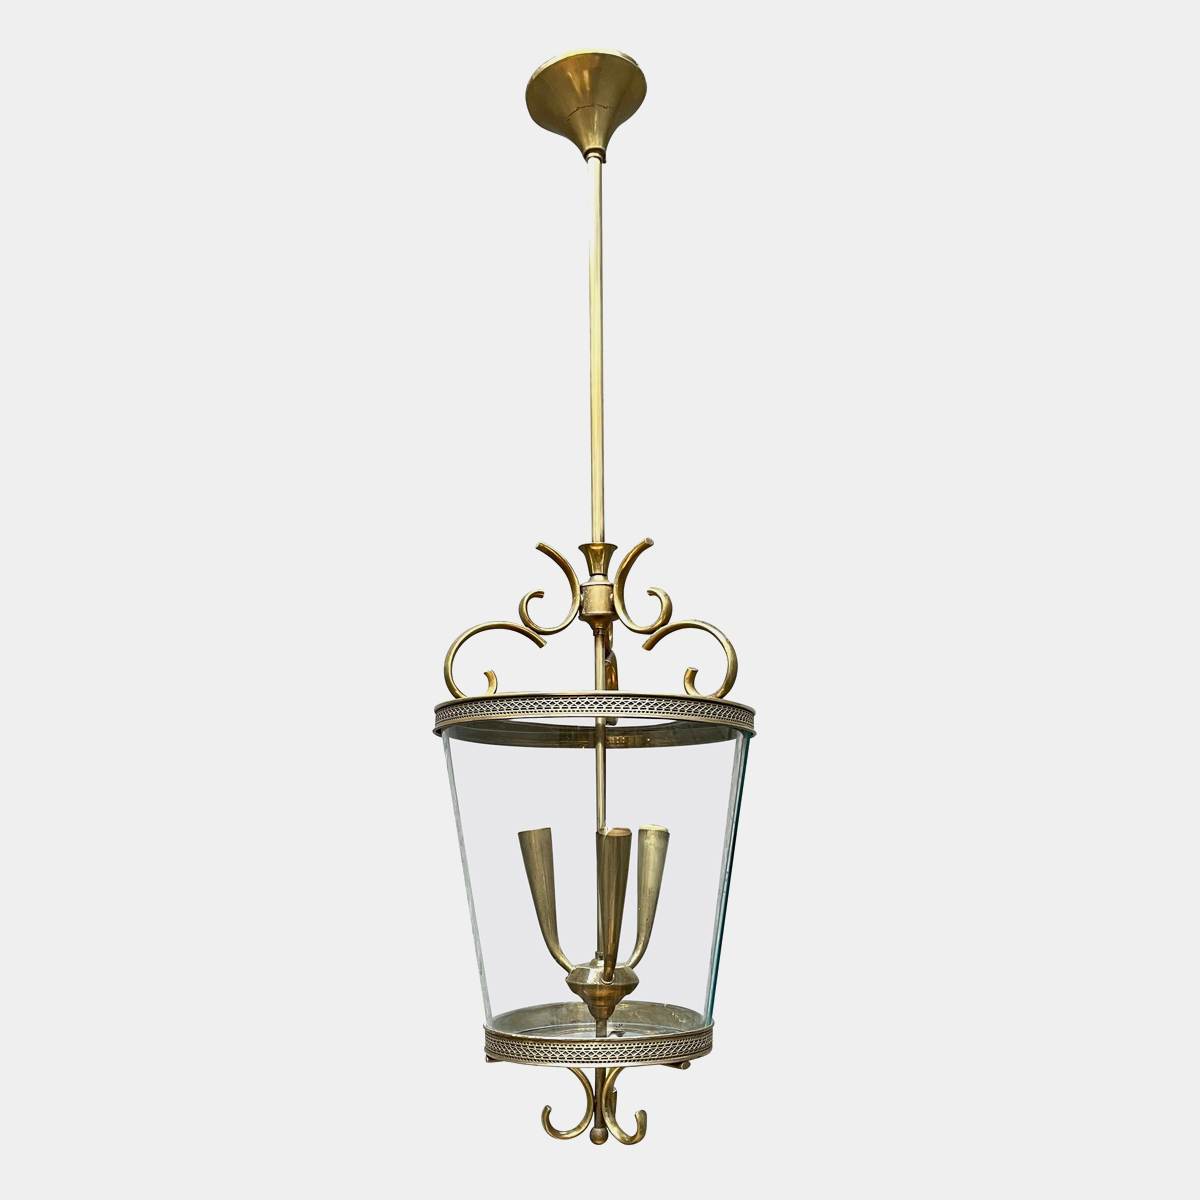 An Italian Brass and Glass Lantern